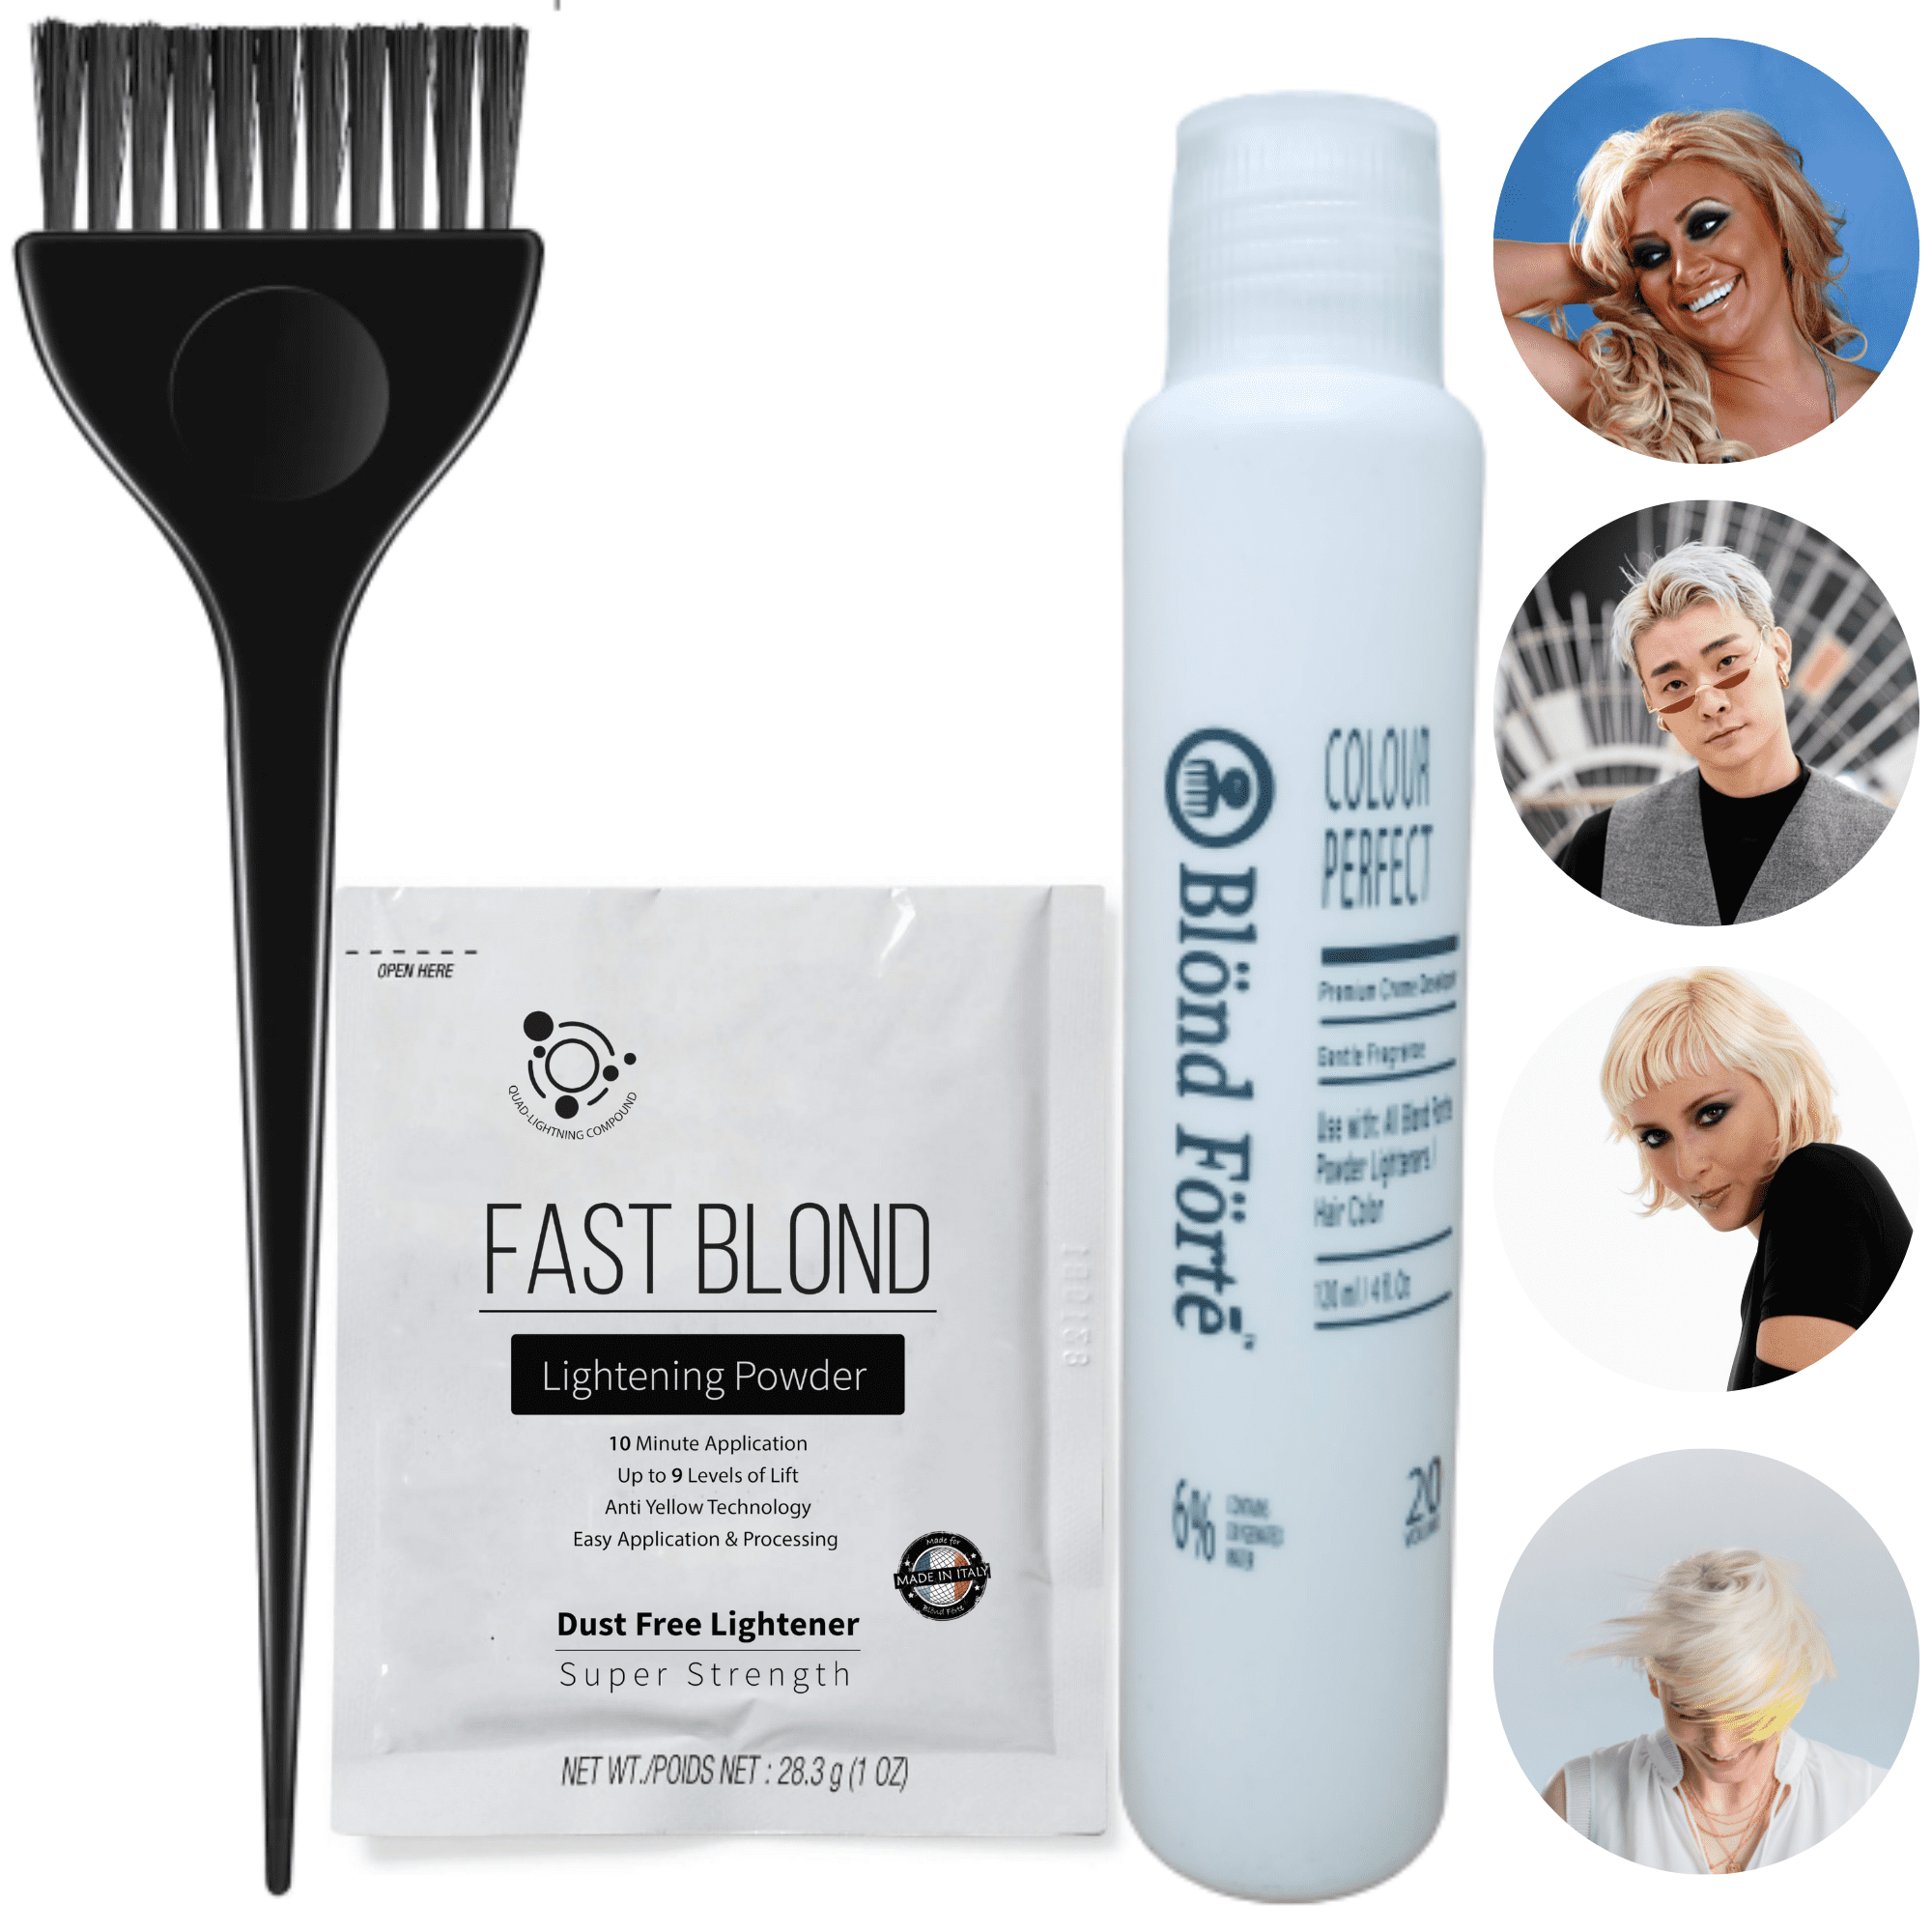 Fast Blond Powder Bleach, 9+ Levels Premium Hair Lightener Kit  oz  (30g), Fast Processing Plus 40 Volume (120ml) Developer - Hair Lightening  Kit + Brush & Glove- Made in Italy 